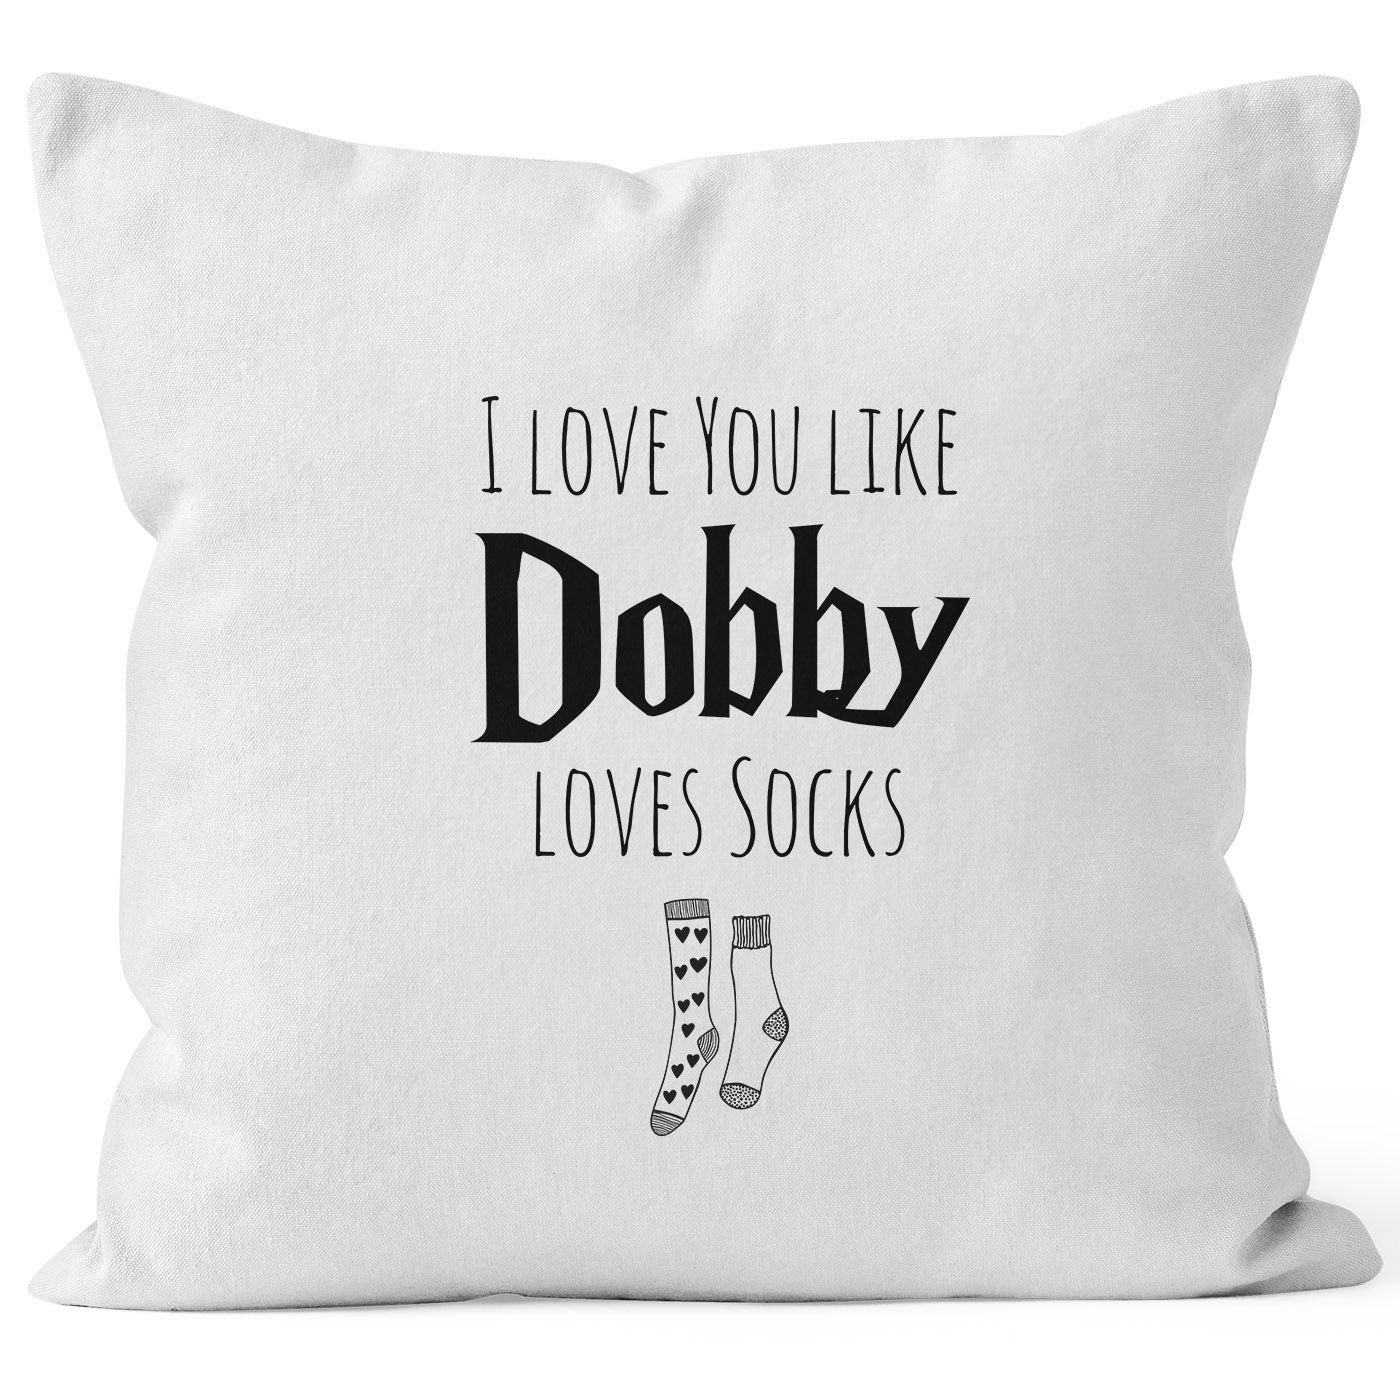 MoonWorks Dekokissen weiß I Hochzeitstag socks loves like Liebe Geschenk Jahrestag Kissen-Bezug Valentinstag you Dobby love MoonWorks®